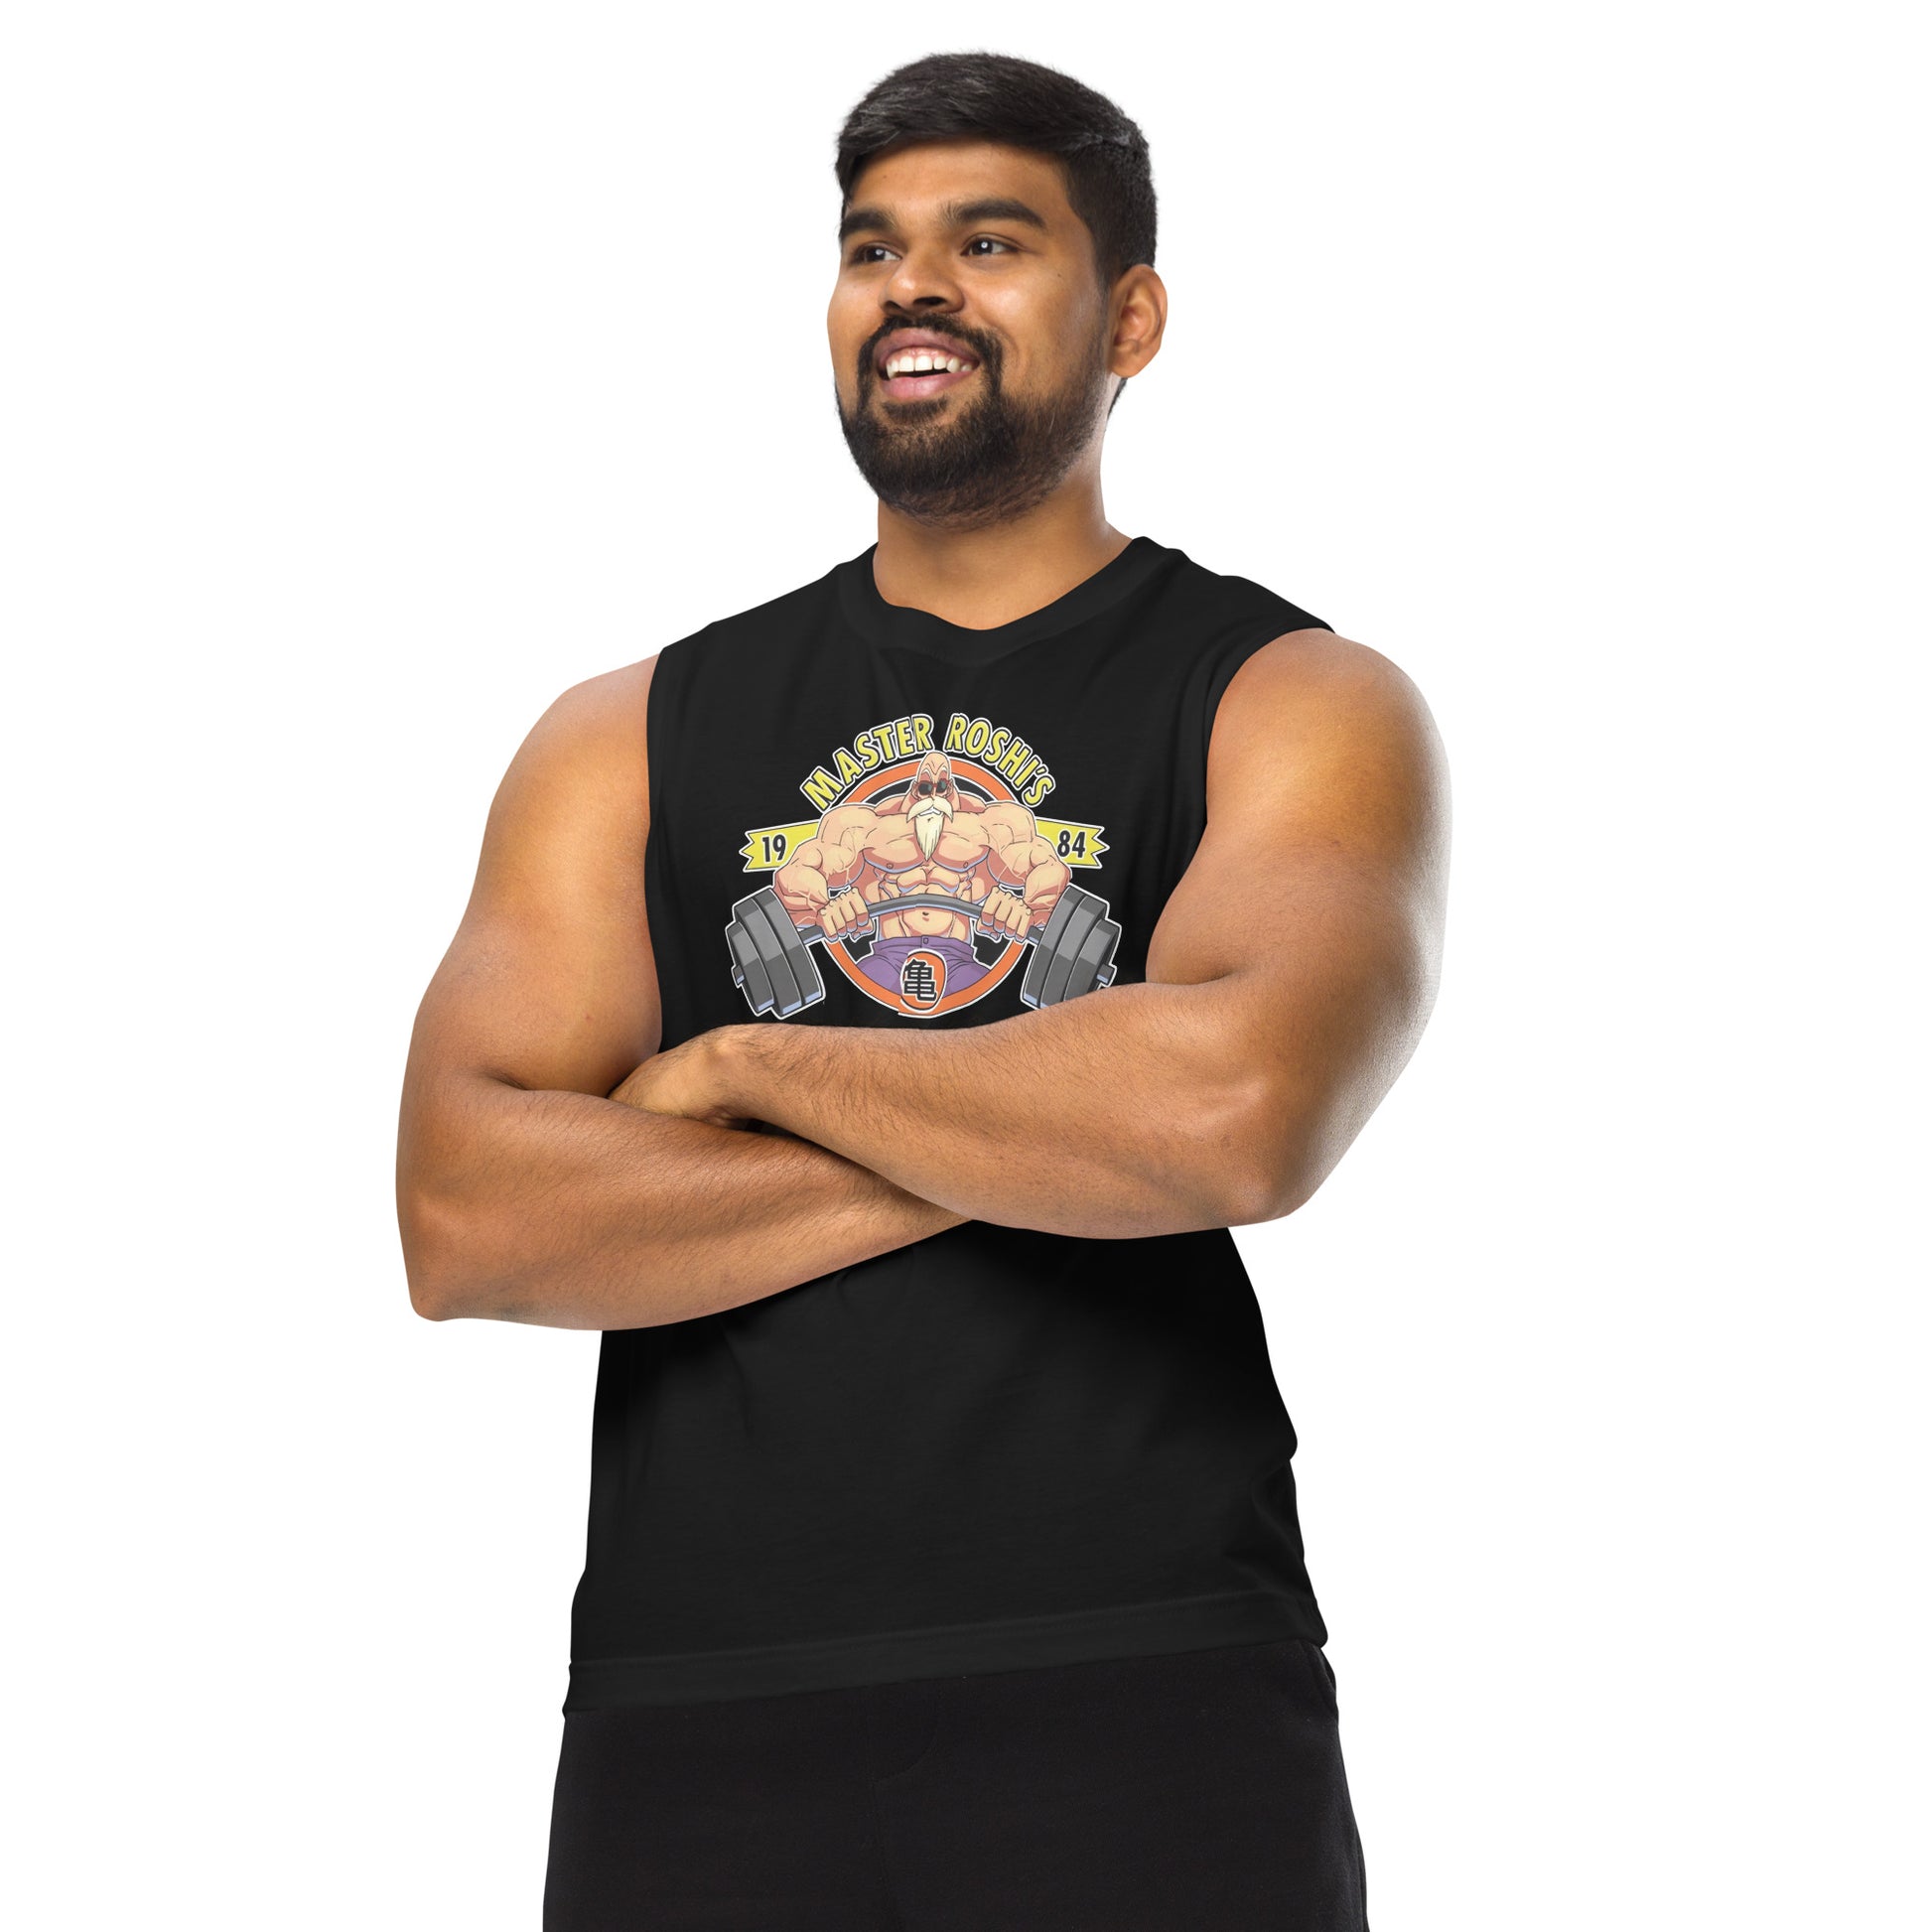 Camiseta sin mangas perfecta para entrenar, Camiseta Master Roshi's Gym comprala en línea y experimenta el mejor servicio al cliente.